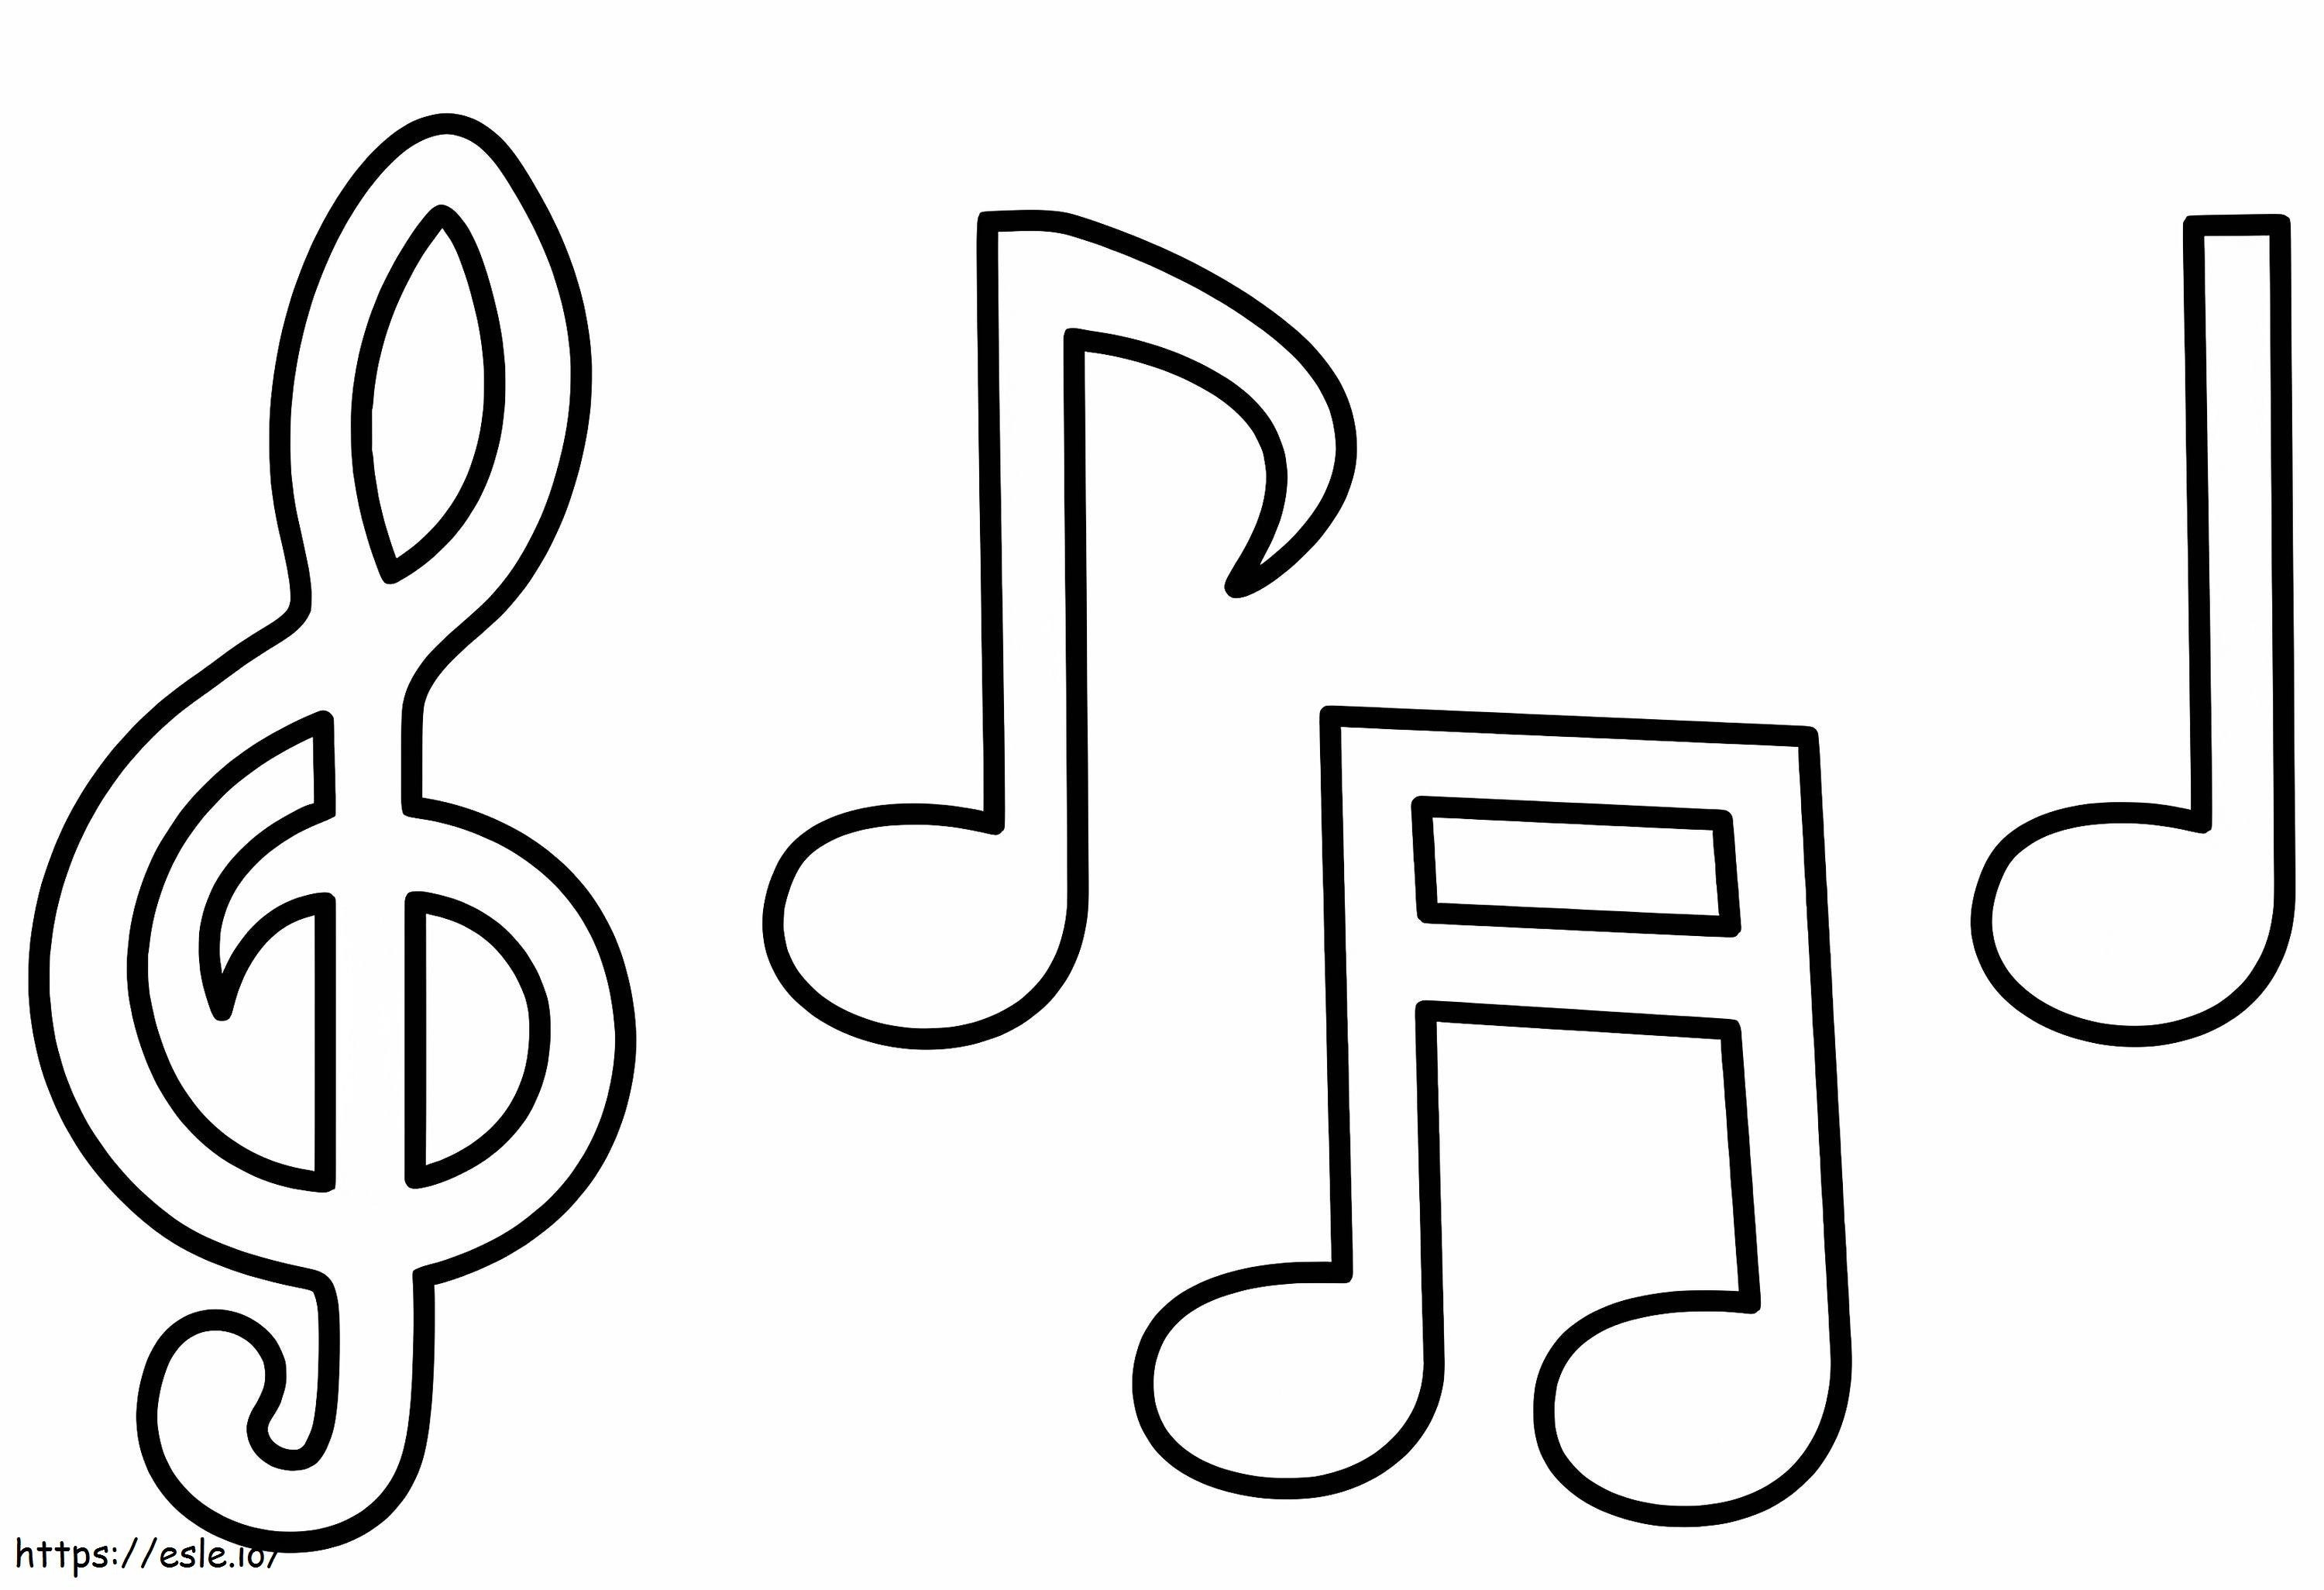 Notas musicales simples para colorear